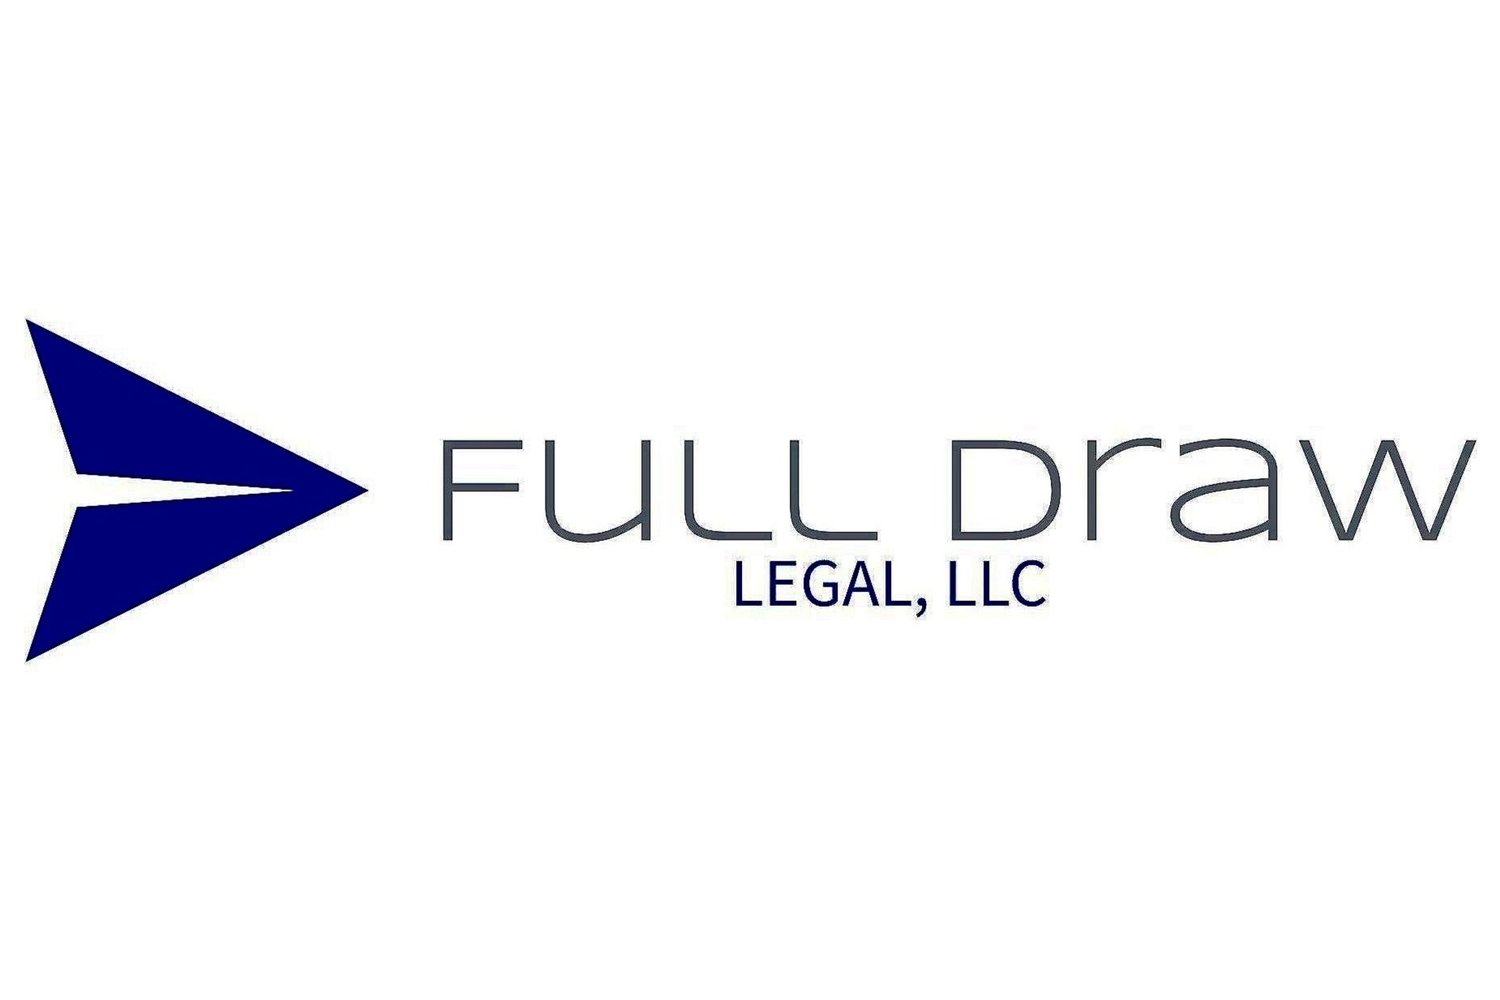 Full Draw Legal, LLC